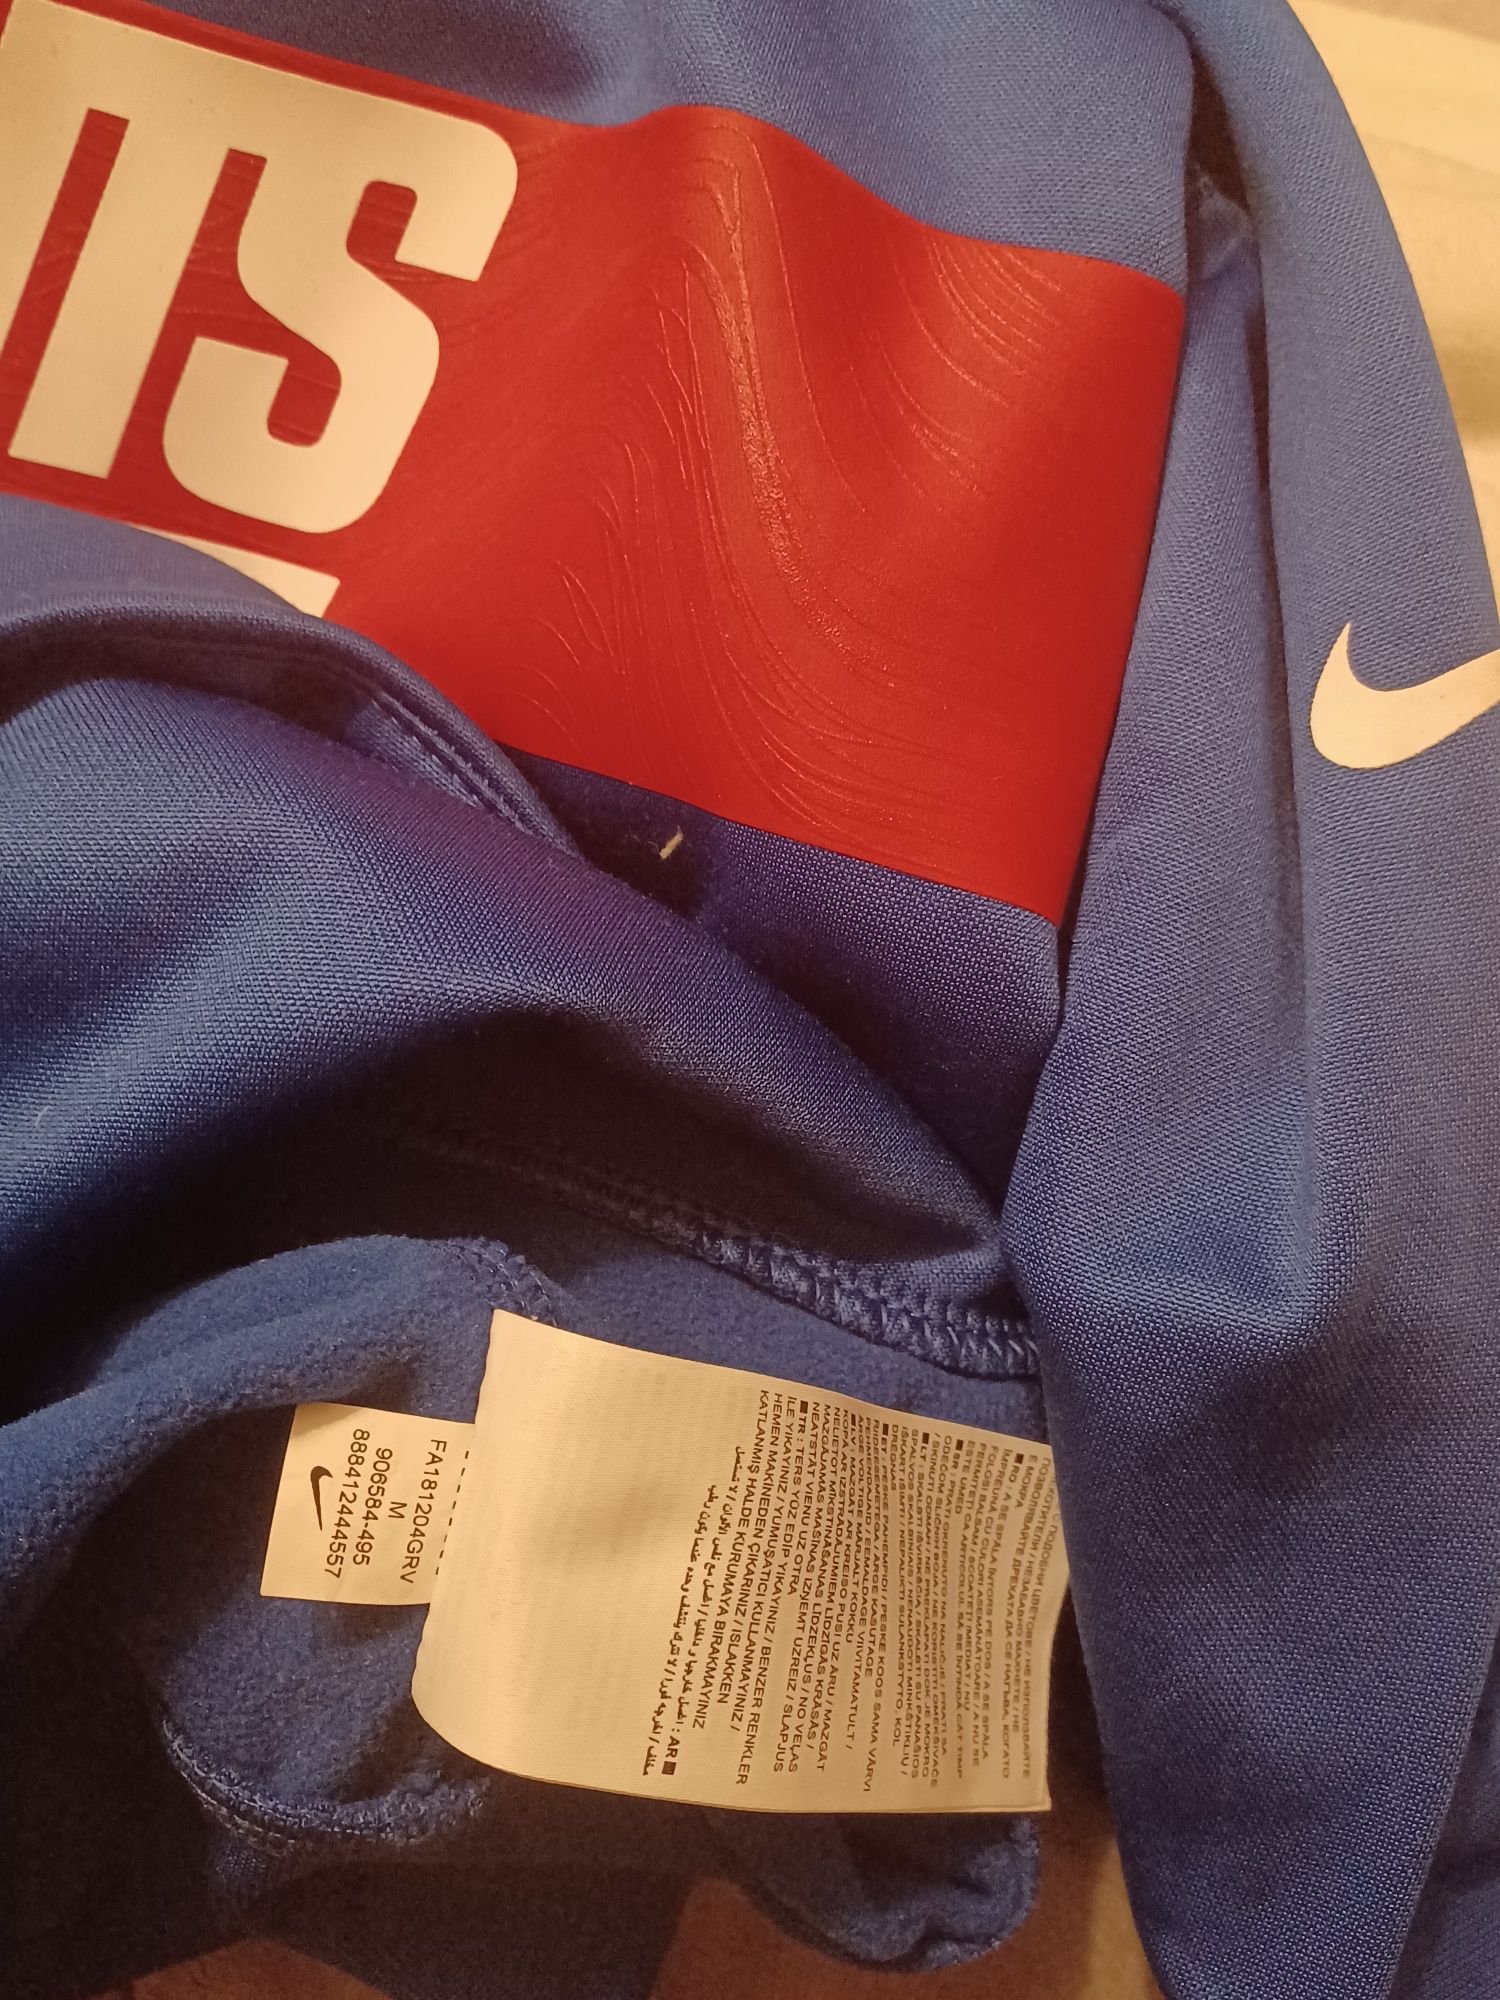 Bluza Nike Giants Nfl rozmiar M